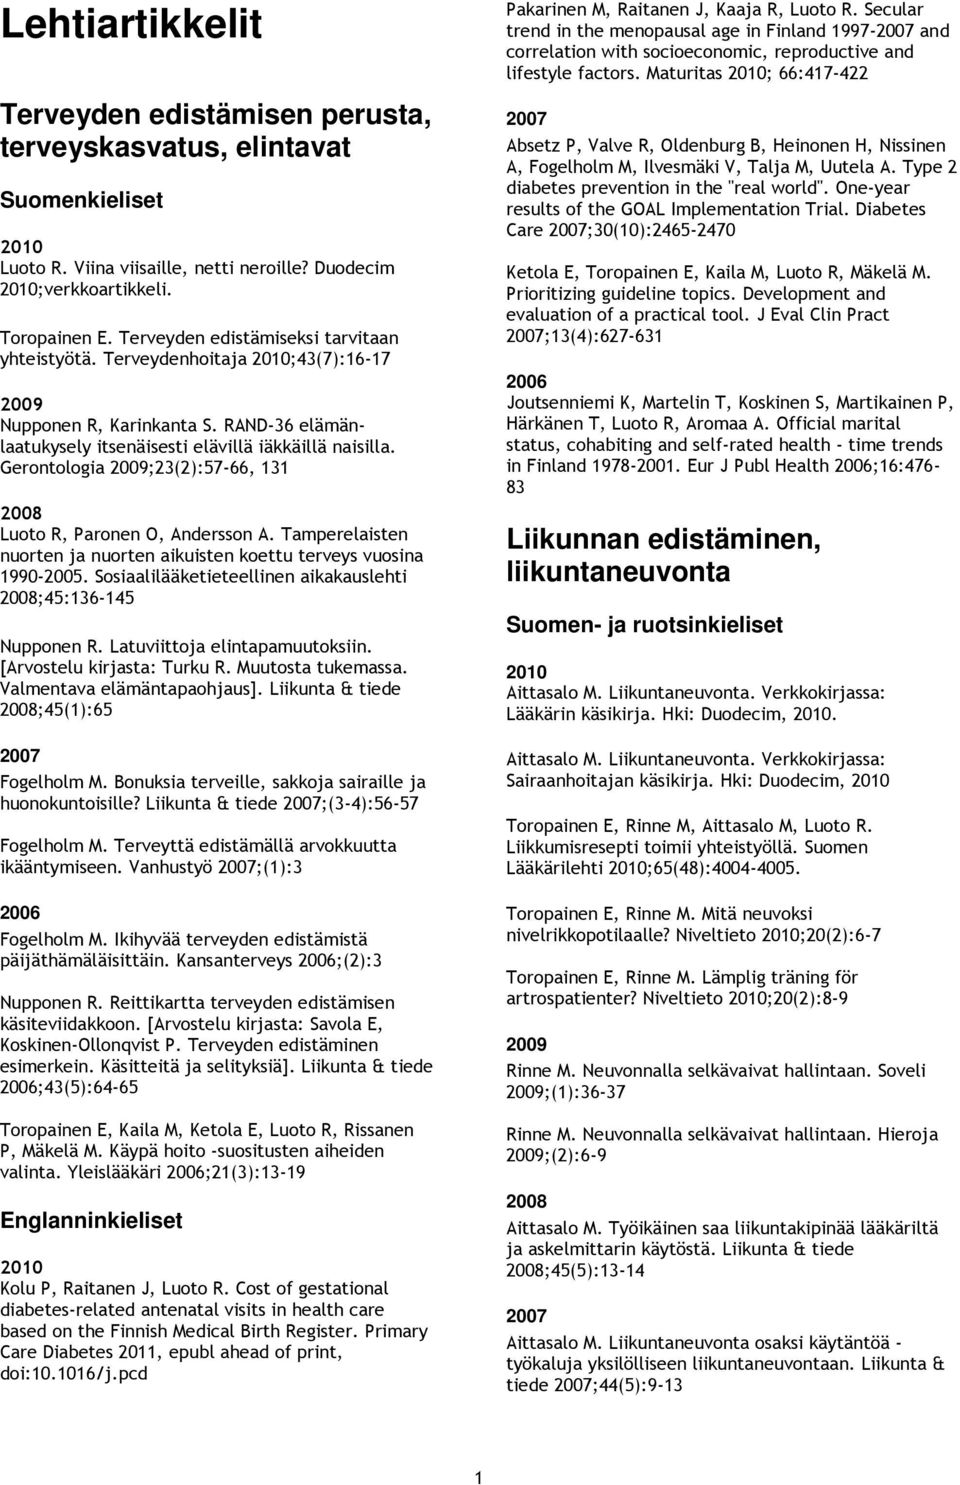 Gerontologia ;23(2):57-66, 131 Luoto R, Paronen O, Andersson A. Tamperelaisten nuorten ja nuorten aikuisten koettu terveys vuosina 1990-2005.